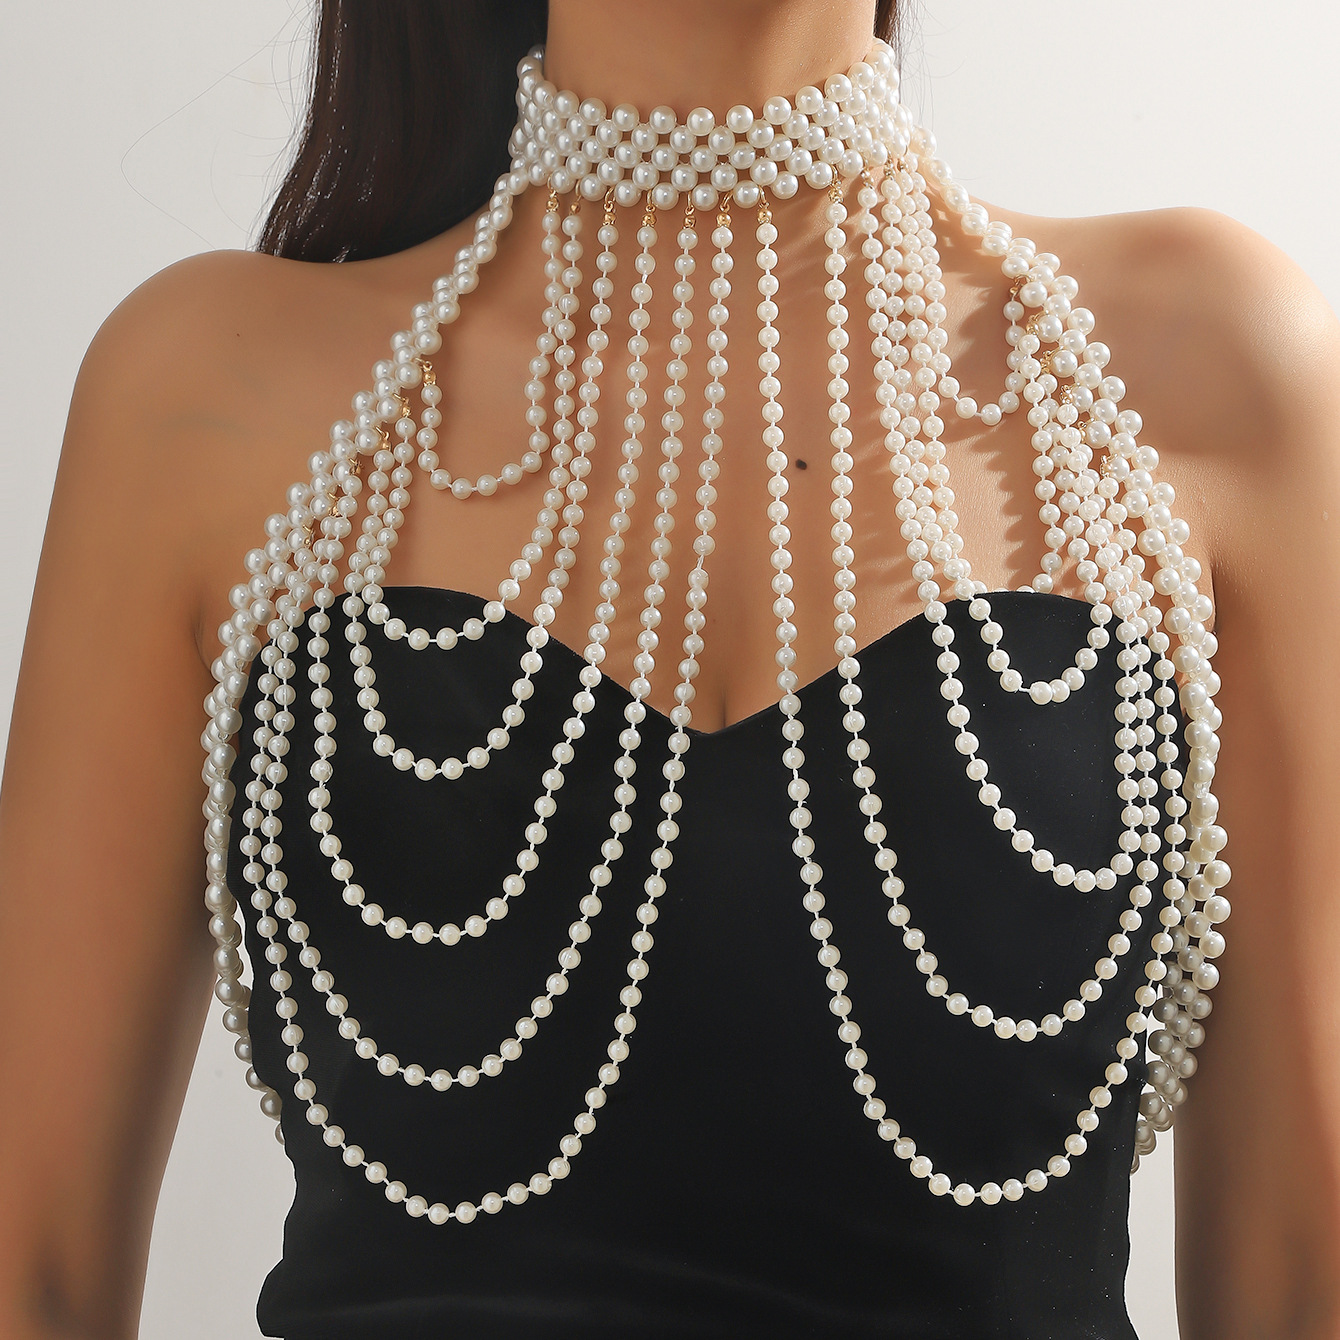 新款欧美饰品重手工串珠珍珠披肩外搭礼服胸链性感镂空胸饰身体链